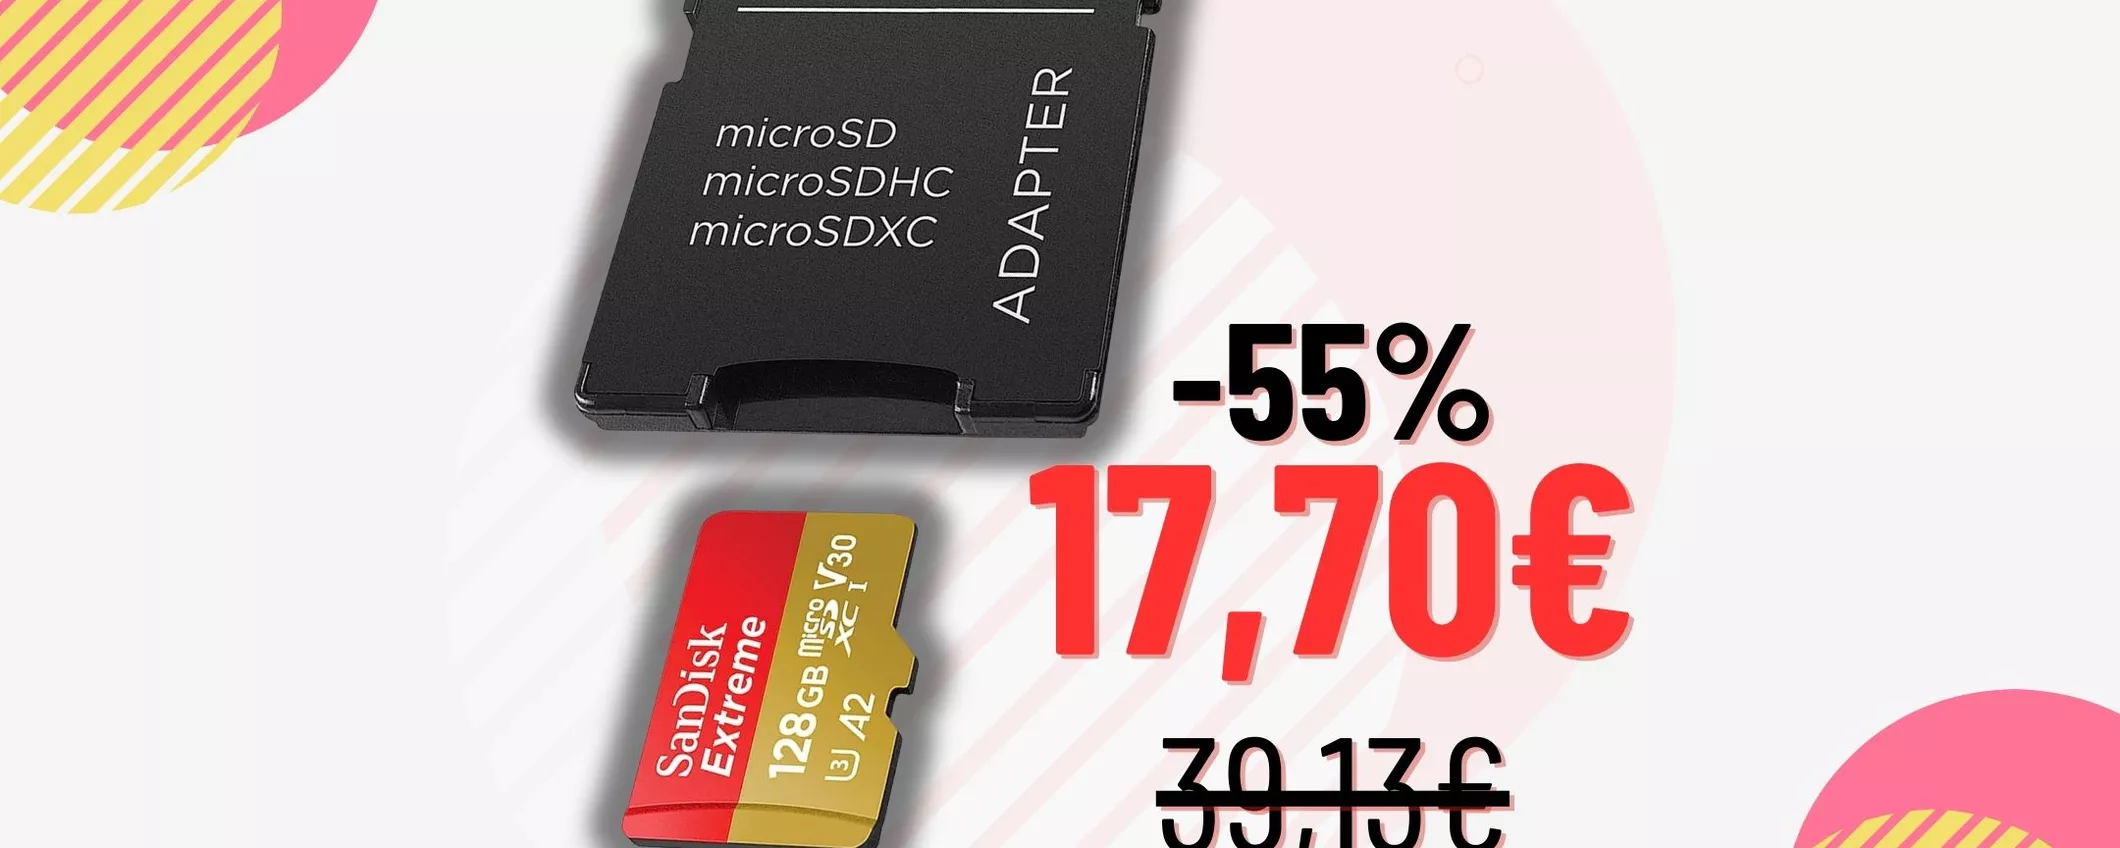 CHE BOMBA SanDisk Extreme da 128GB a questo prezzo: fotografi accorrete!